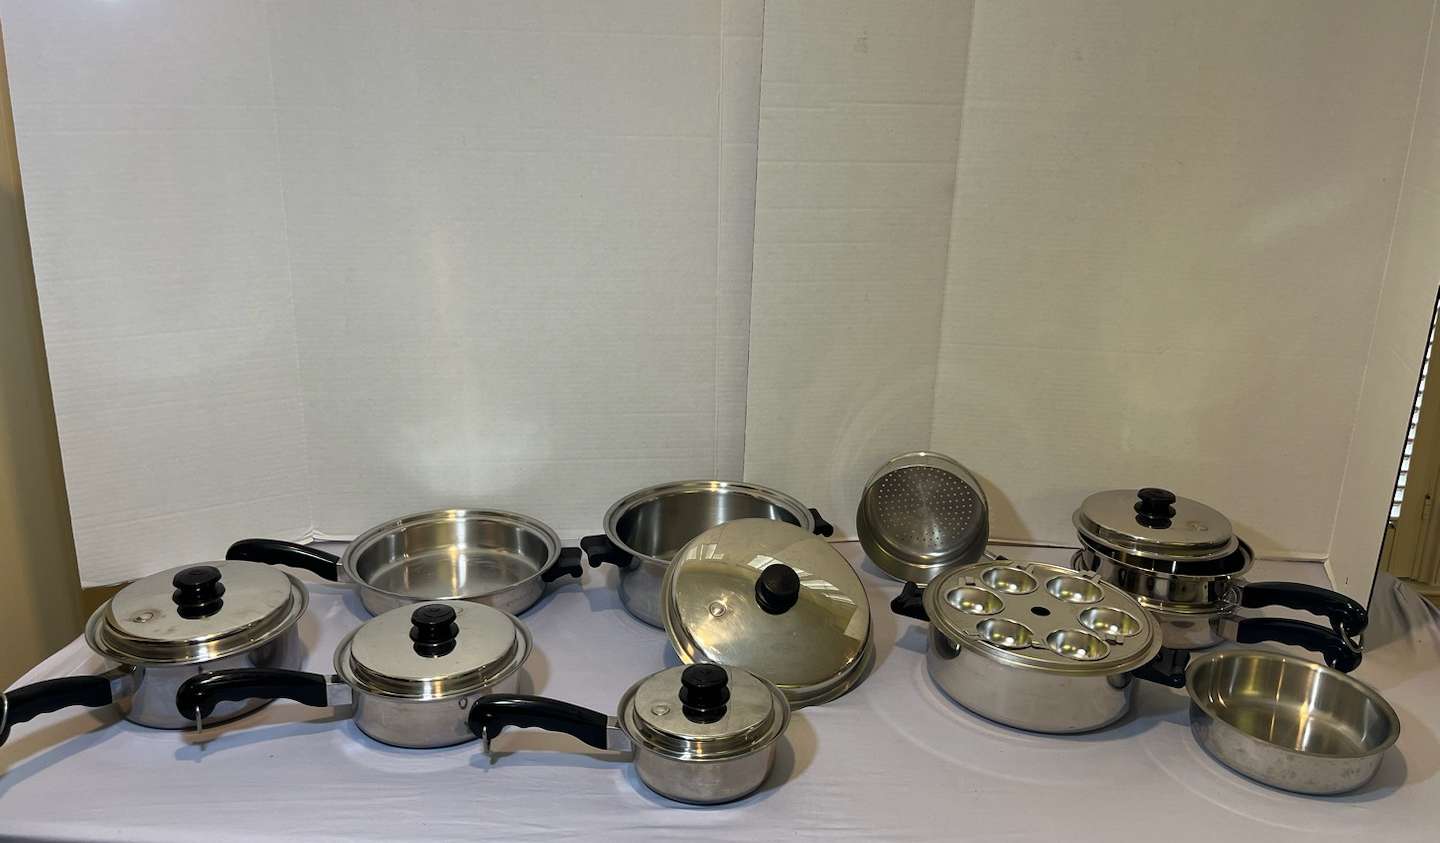 Saladmaster Cookware – Estherbrook, Inc.